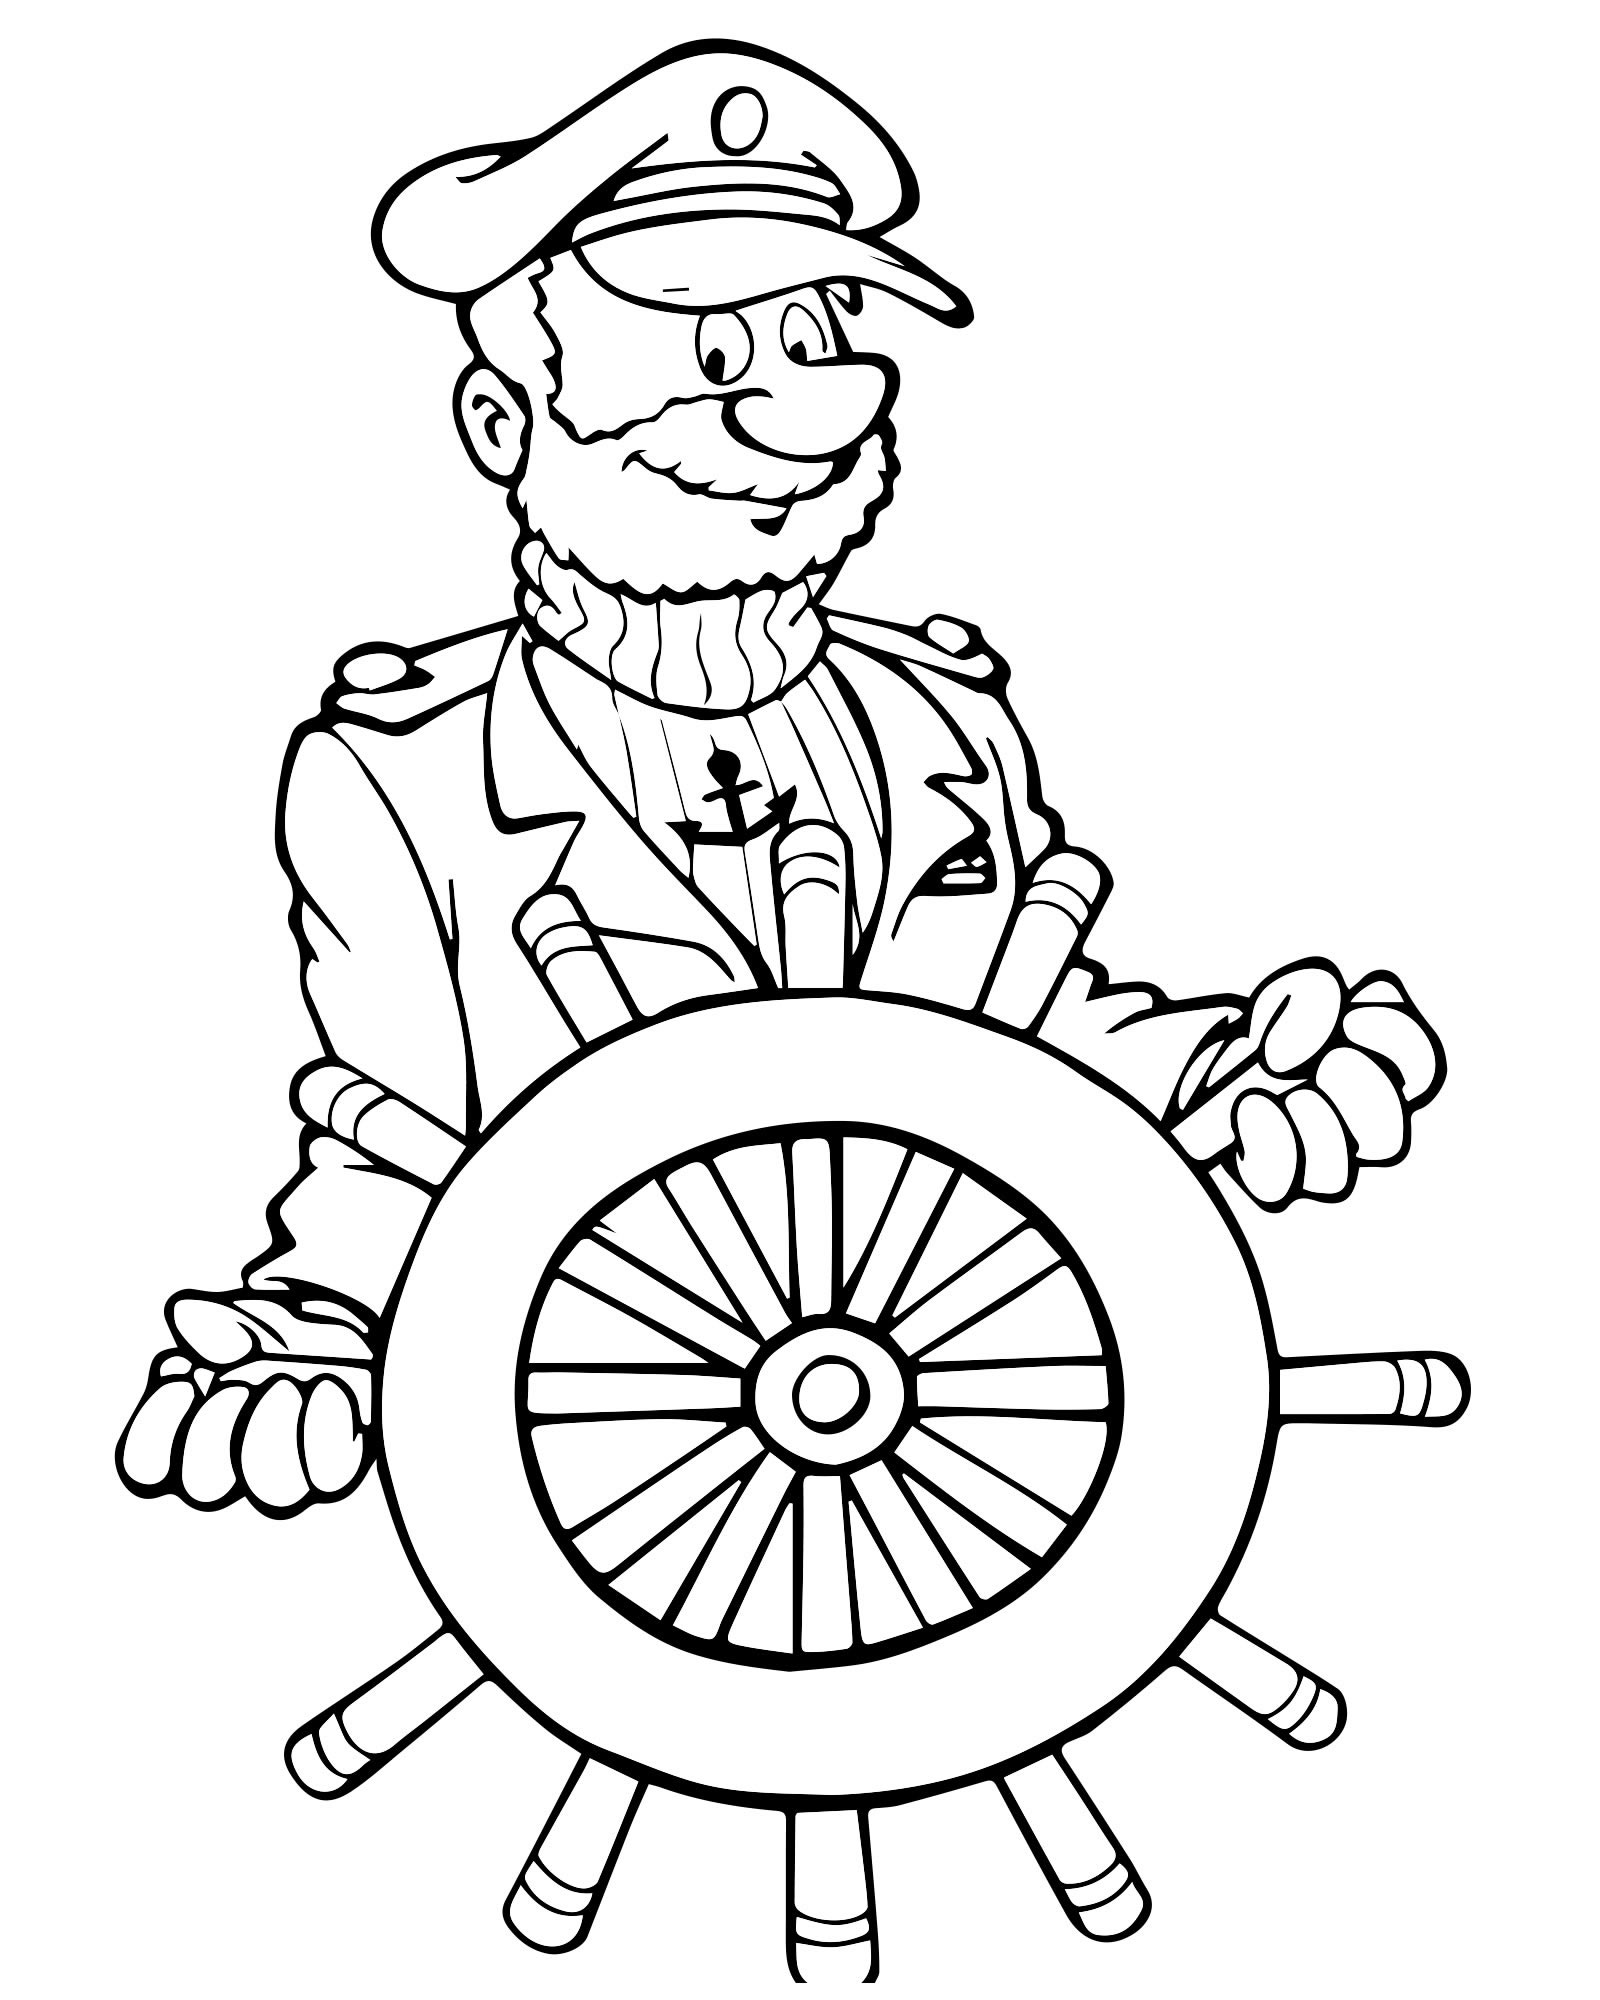 Капитан корабля раскраска для детей